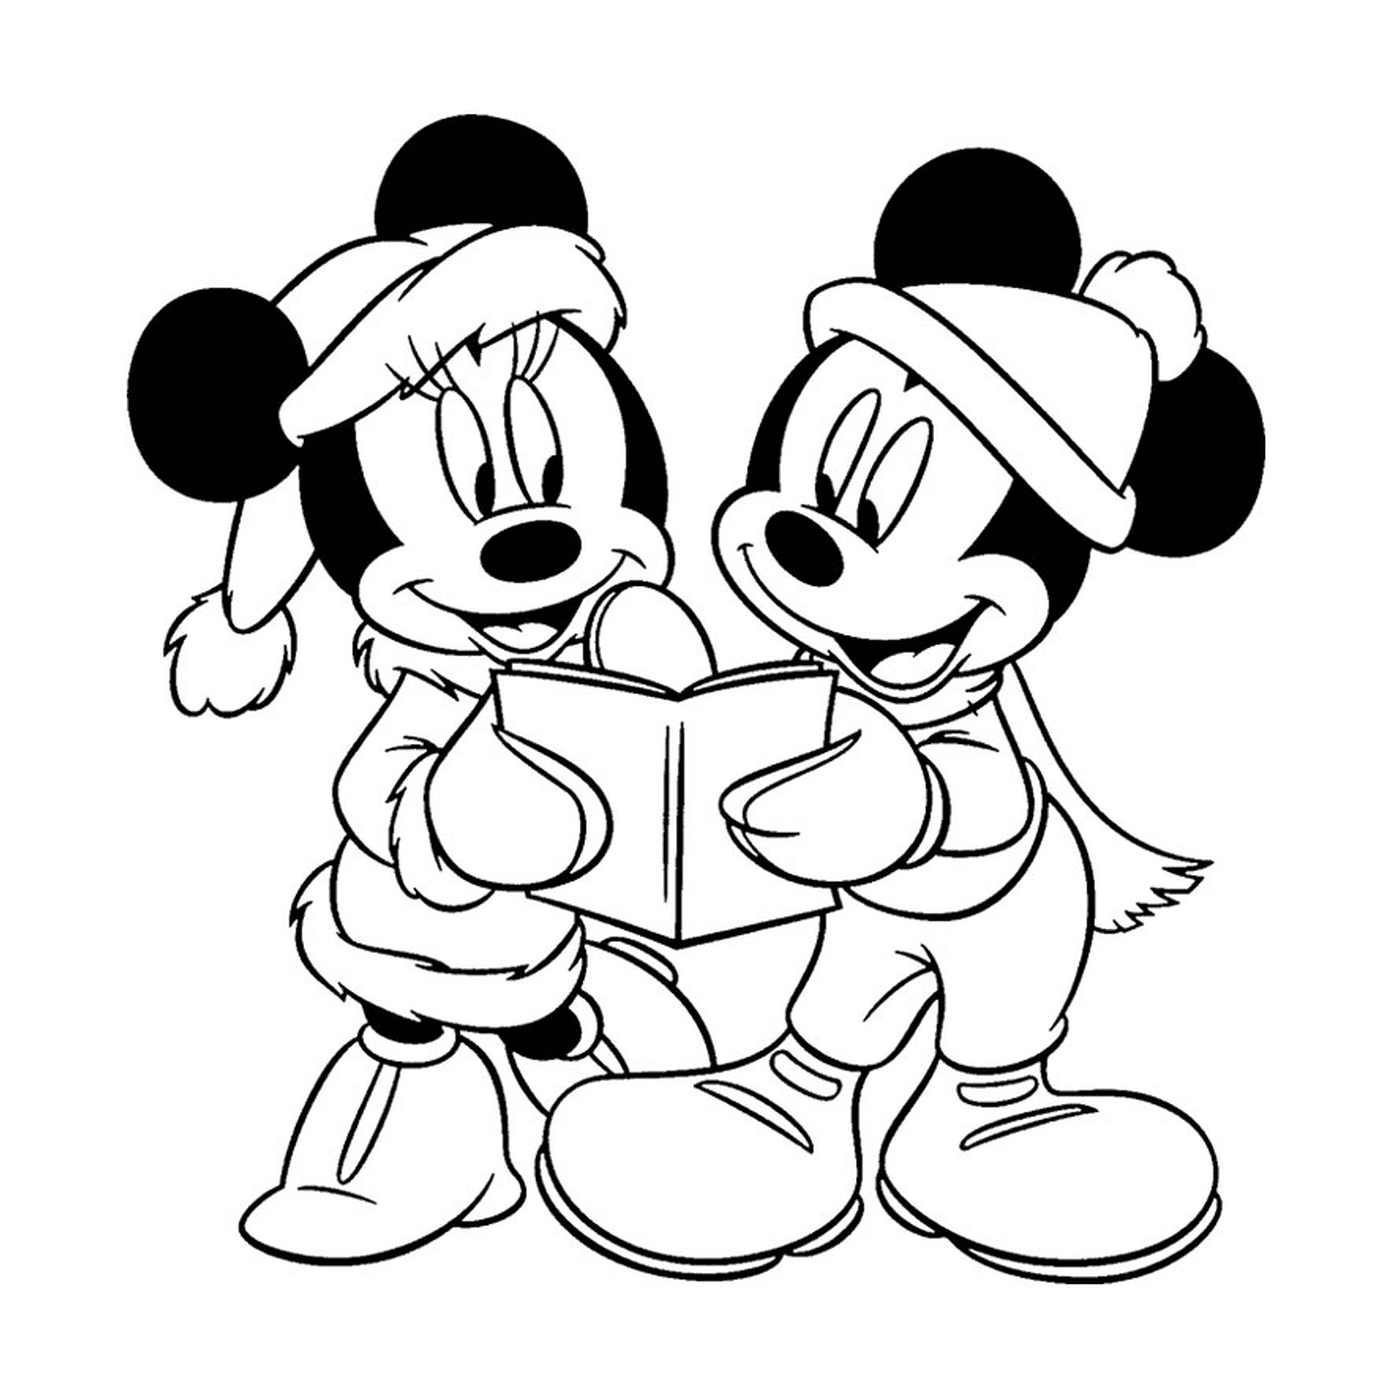  Mickey Mouse y Minnie Mouse leyeron un libro juntos 